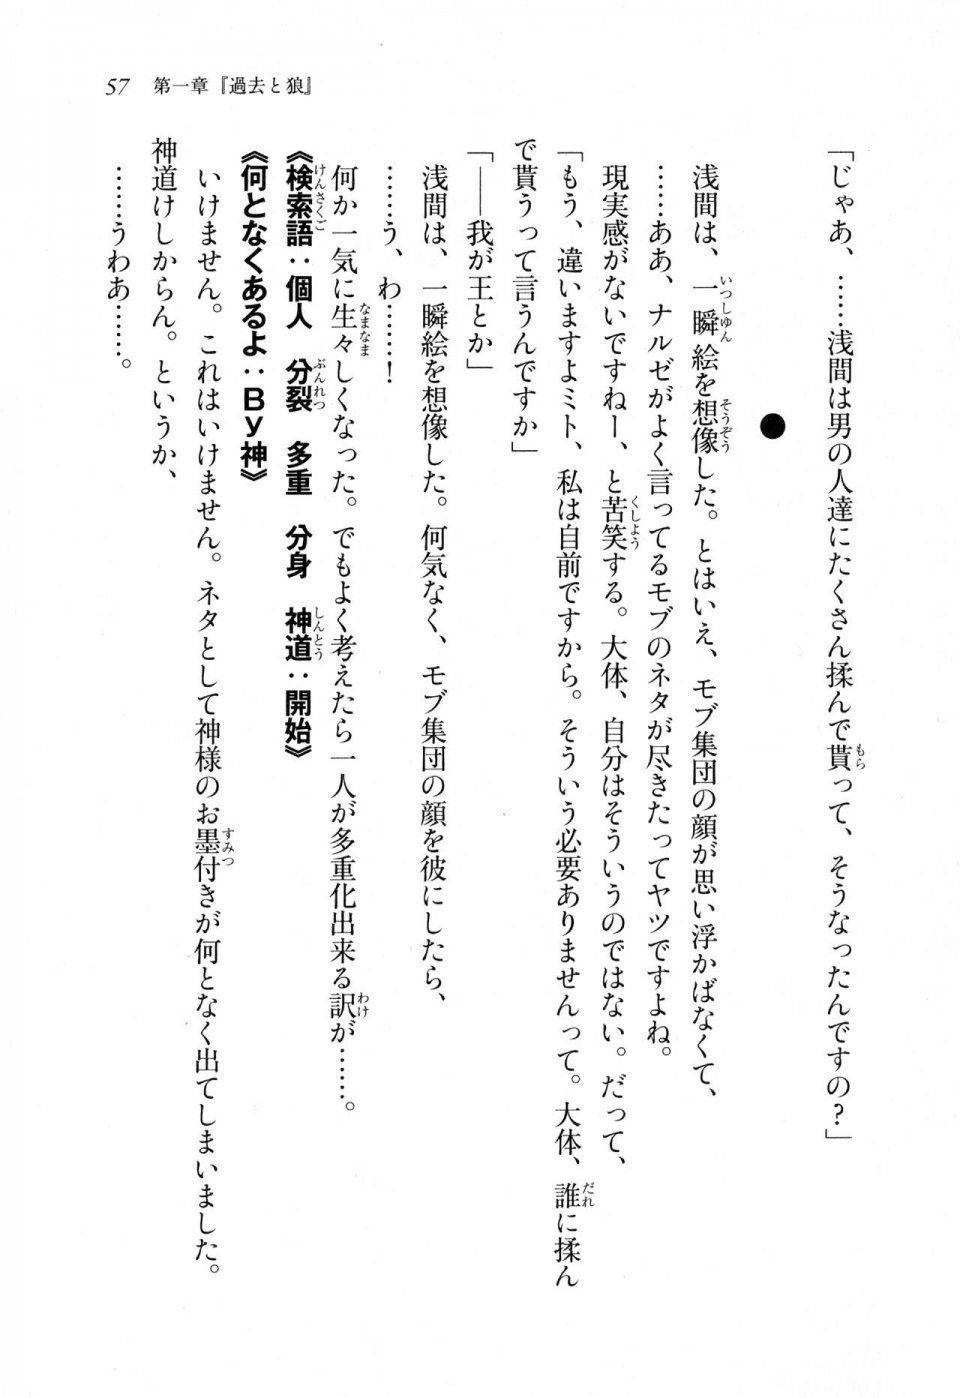 Kyoukai Senjou no Horizon LN Sidestory Vol 1 - Photo #55